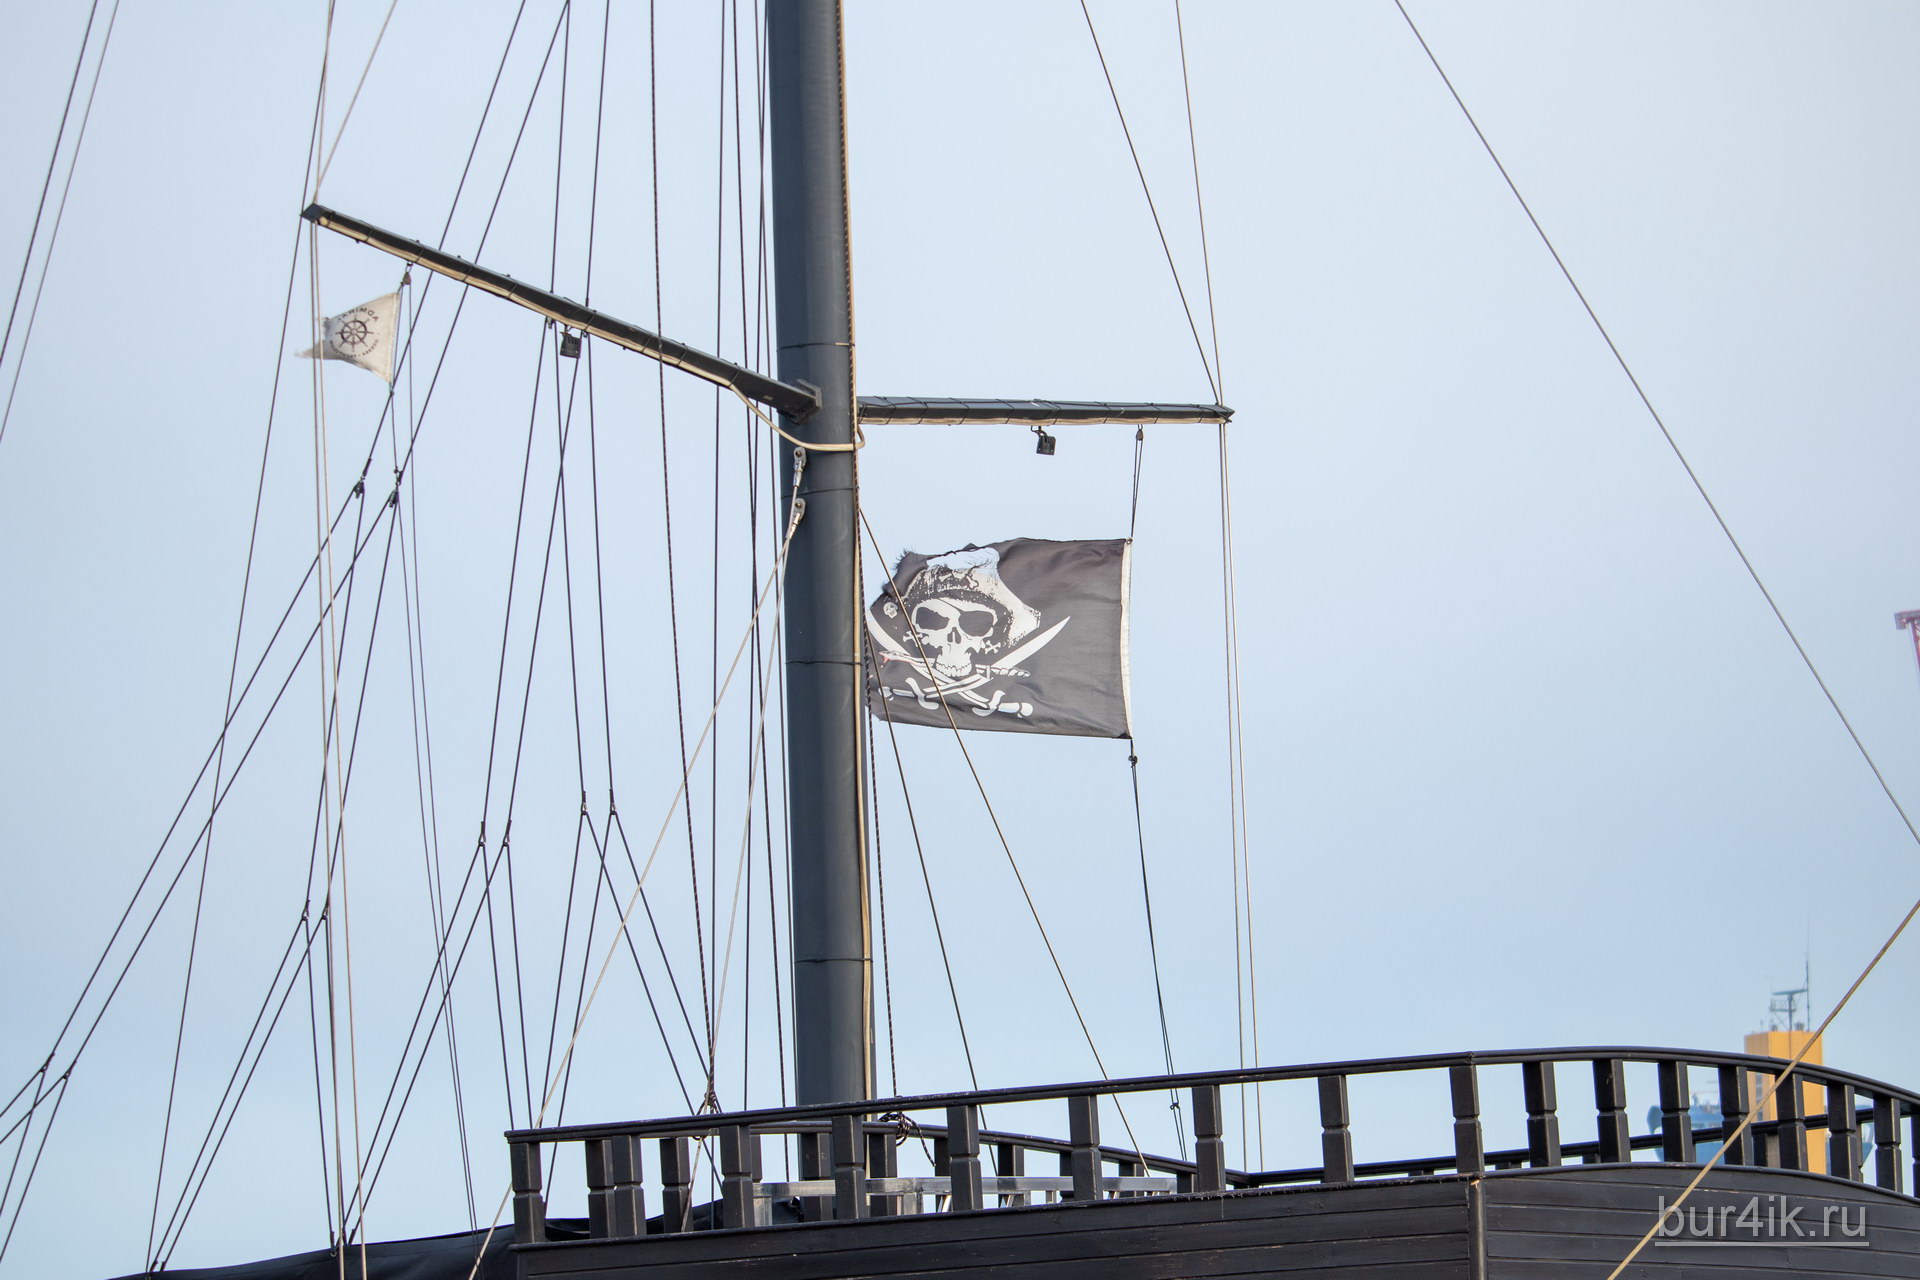 Черный пиратский флаг с черепом и саблями на мачте фрегата 2